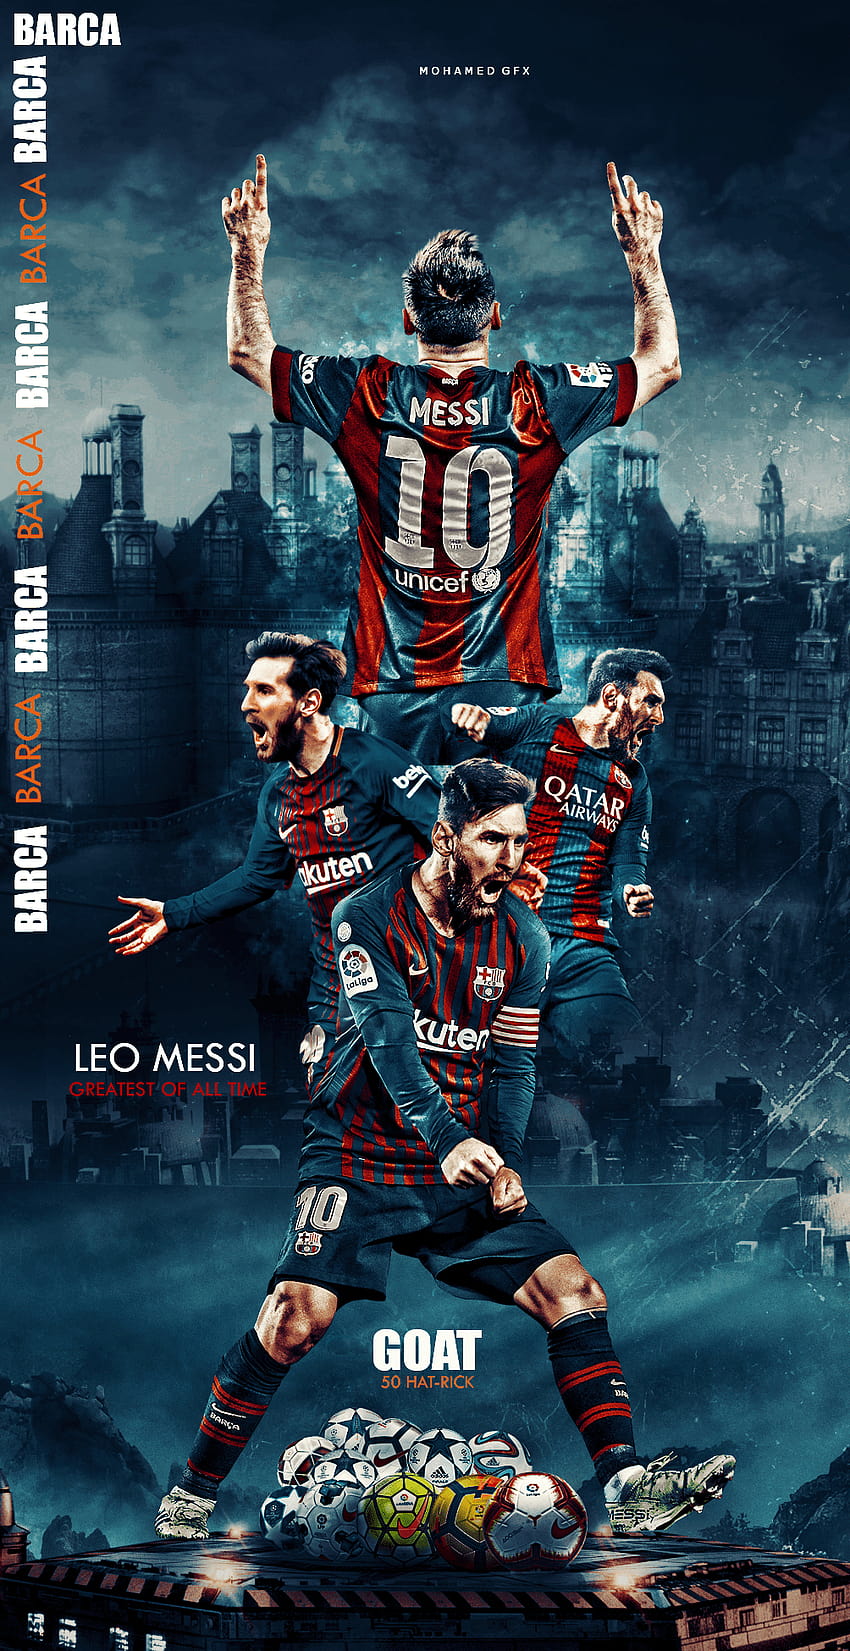 Hãy tải miễn phí HD phone wallpaper Messi để ngắm nhìn siêu sao bóng đá điển trai này mỗi ngày trên điện thoại của bạn. Hình nền rực rỡ này sẽ mang đến cho bạn hình ảnh thần tượng của những người hâm mộ trên toàn thế giới và đảm bảo tăng tính thẩm mỹ cho điện thoại của bạn.